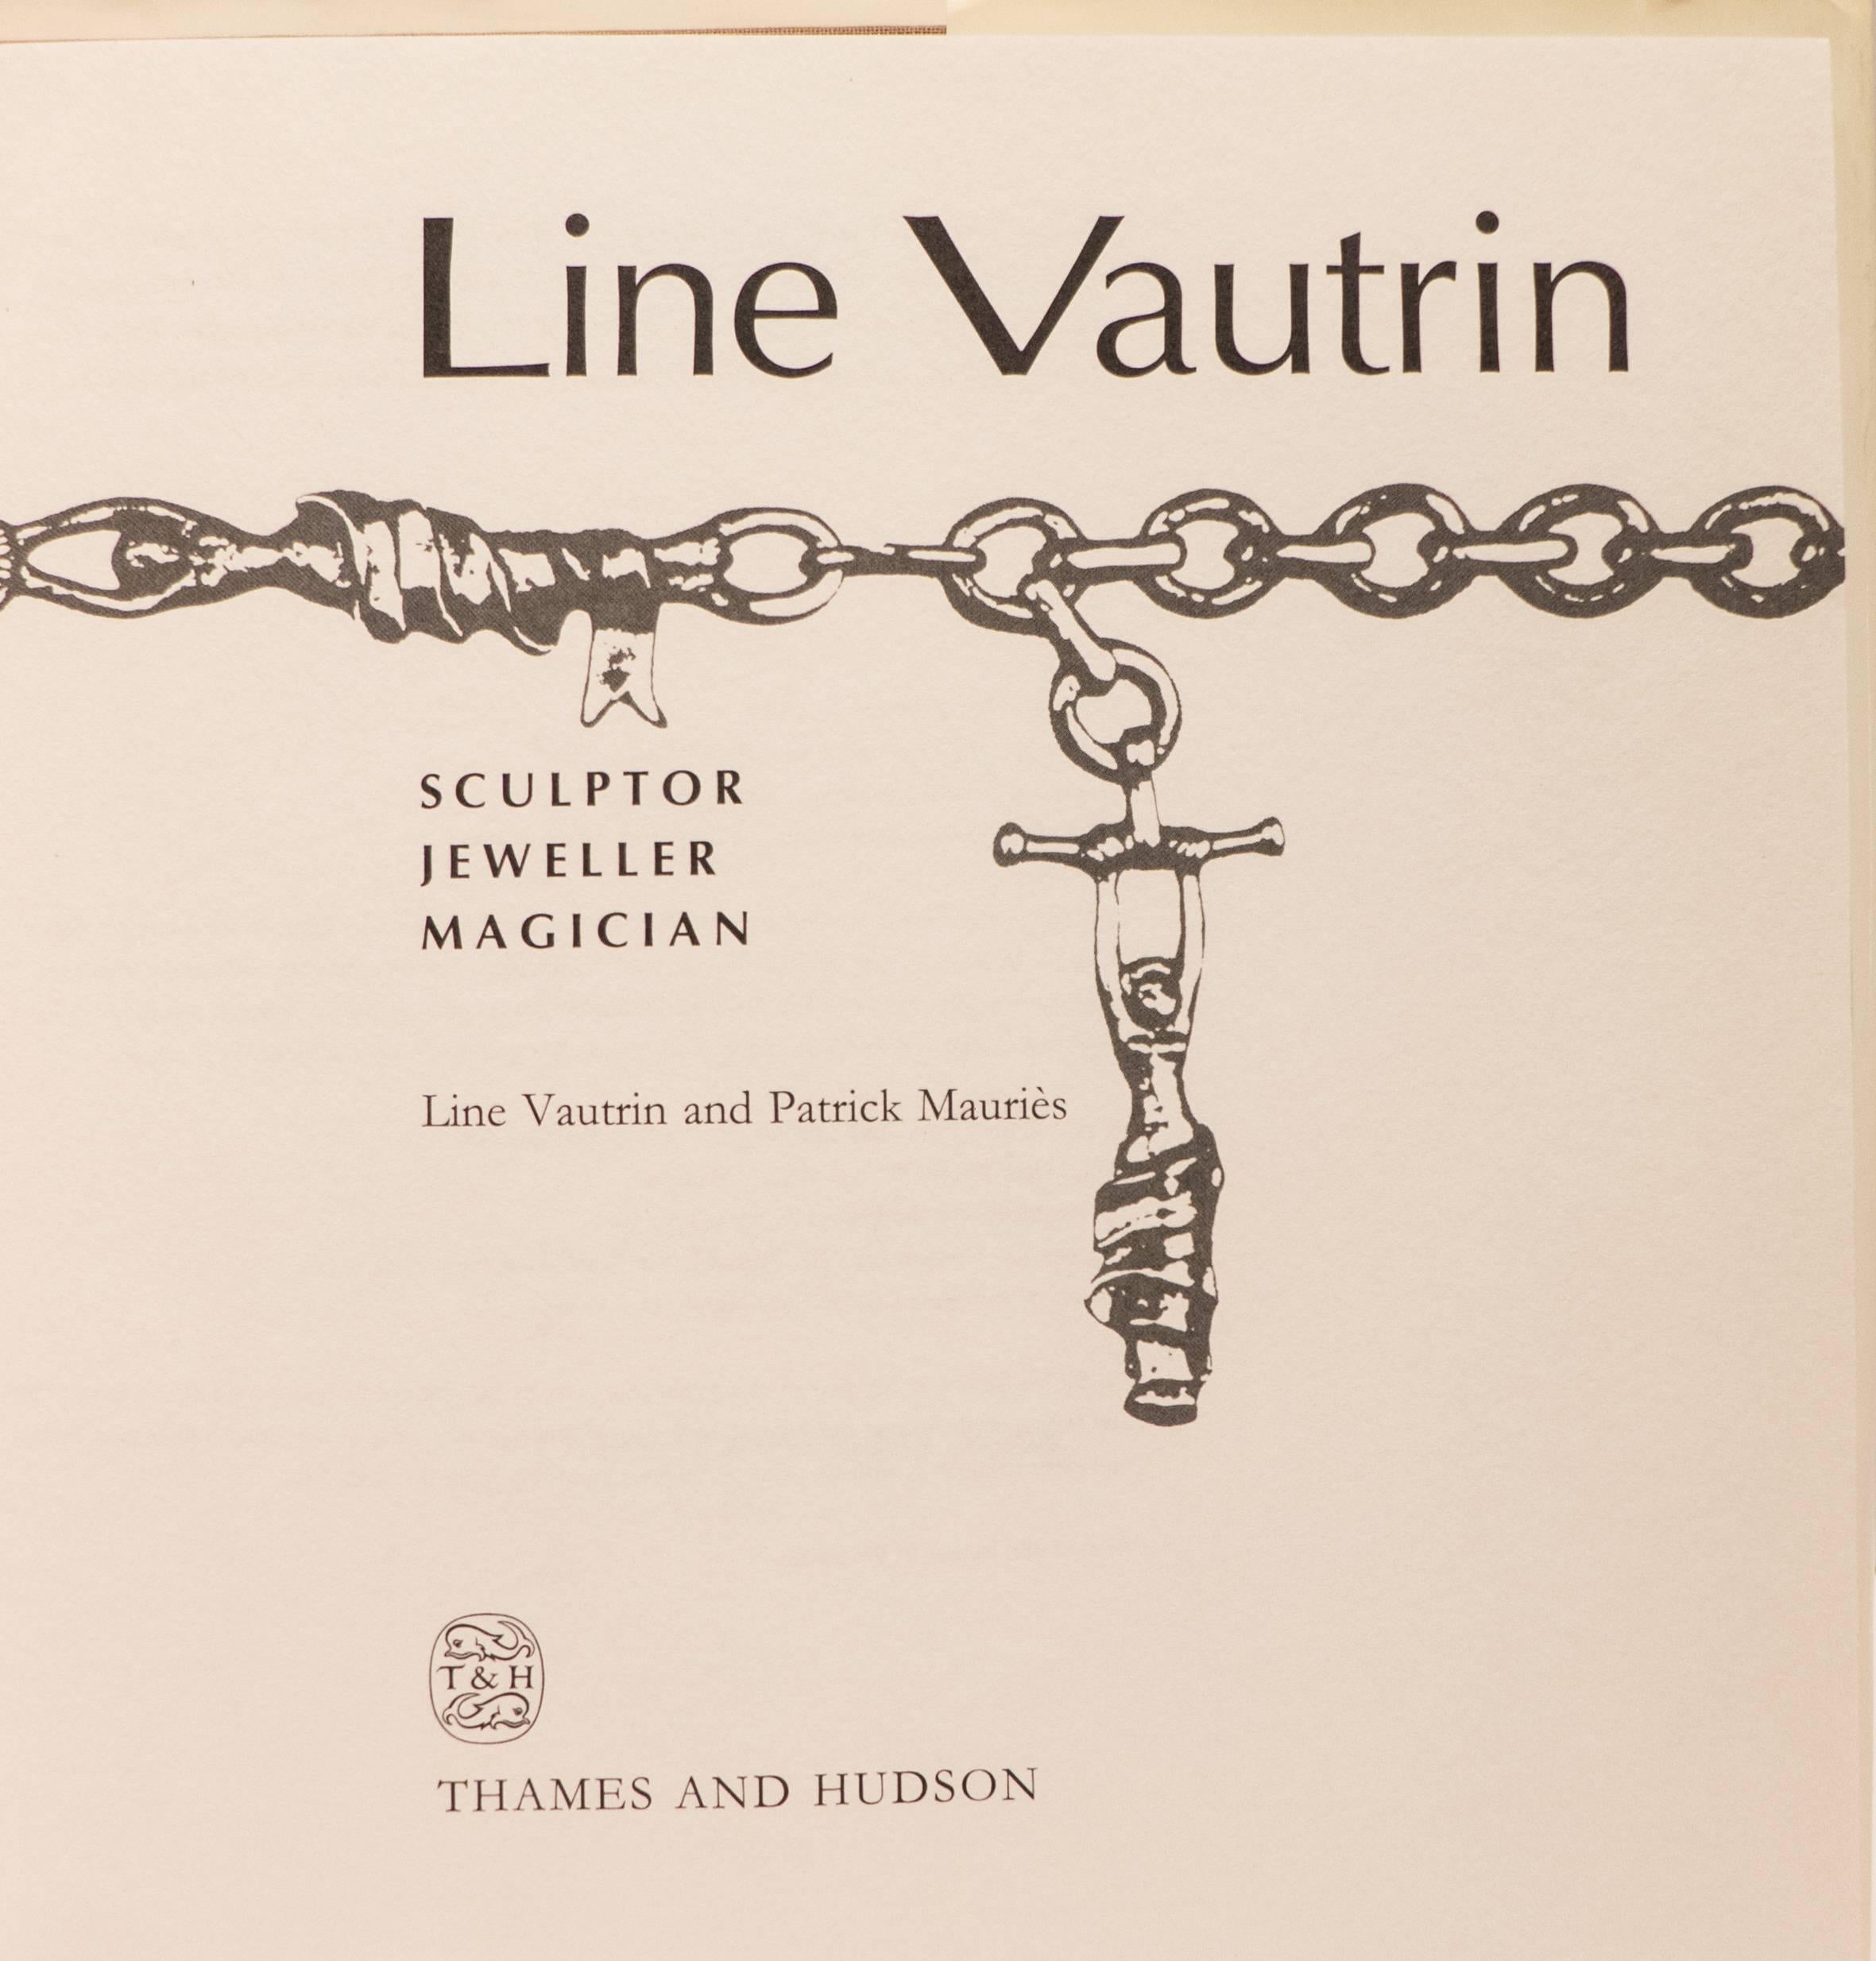 line vautrin book